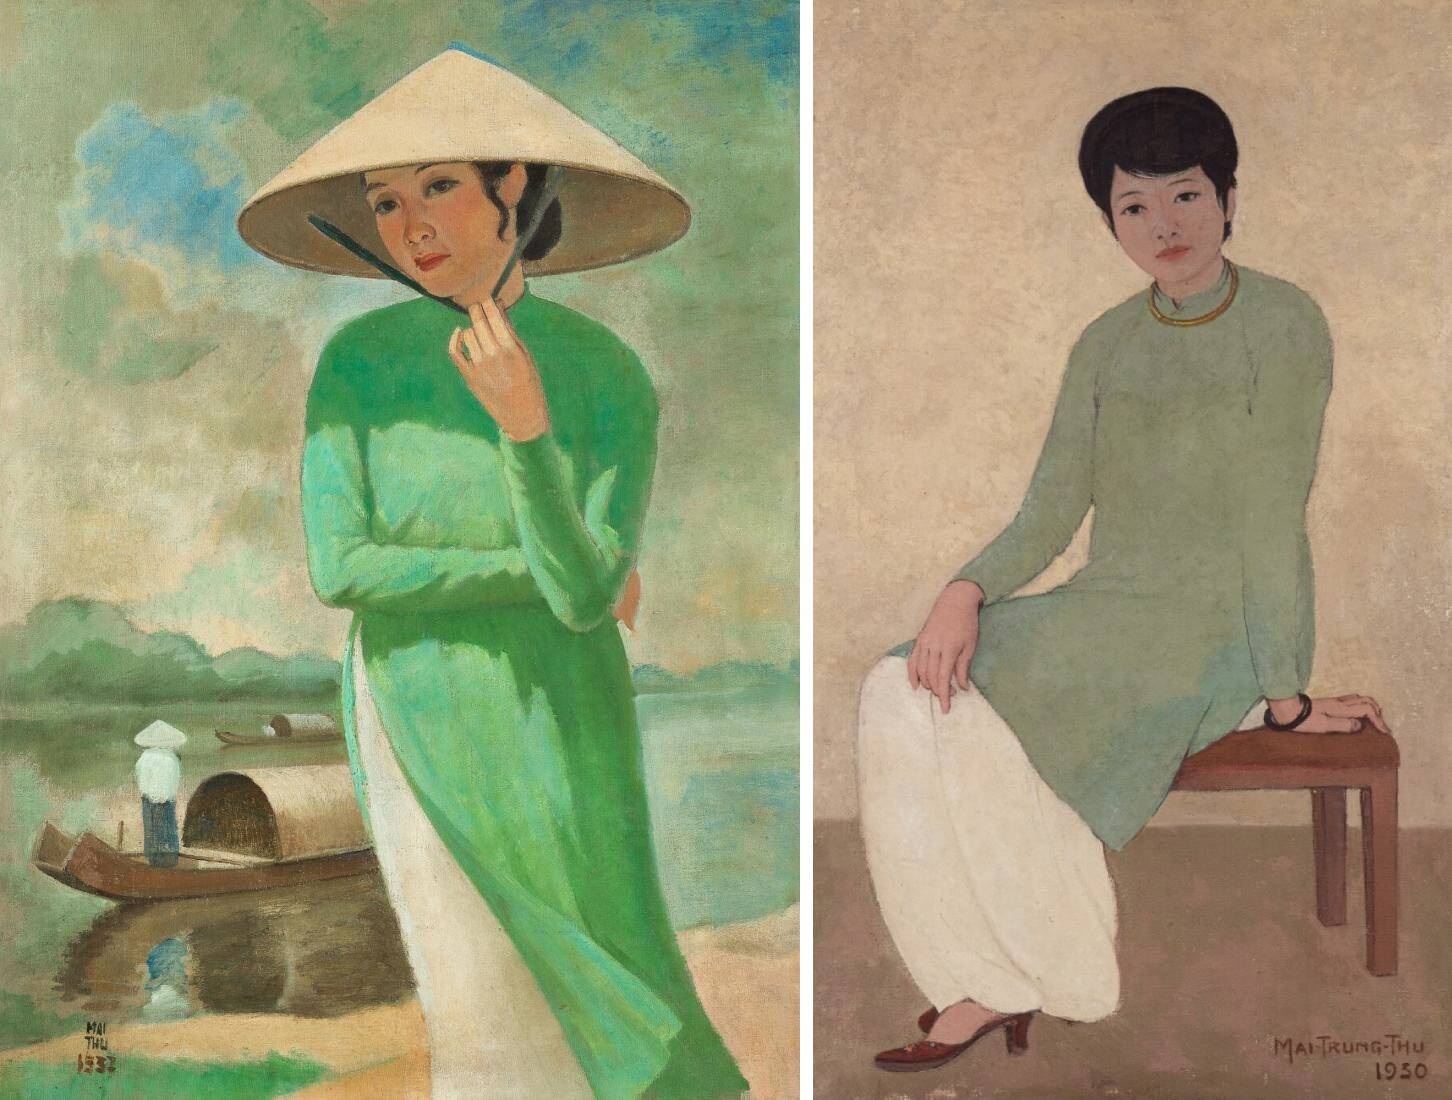 Người phụ nữ áo dài: Người phụ nữ Việt Nam trong bộ áo dài truyền thống có lẽ là một trong những hình ảnh được yêu thích nhất trên khắp thế giới. Sự thanh lịch và quý phái của họ khiến cho những người xem không thể rời mắt. Hãy cùng ngắm nhìn những hình ảnh tuyệt vời của người phụ nữ trong bộ áo dài.